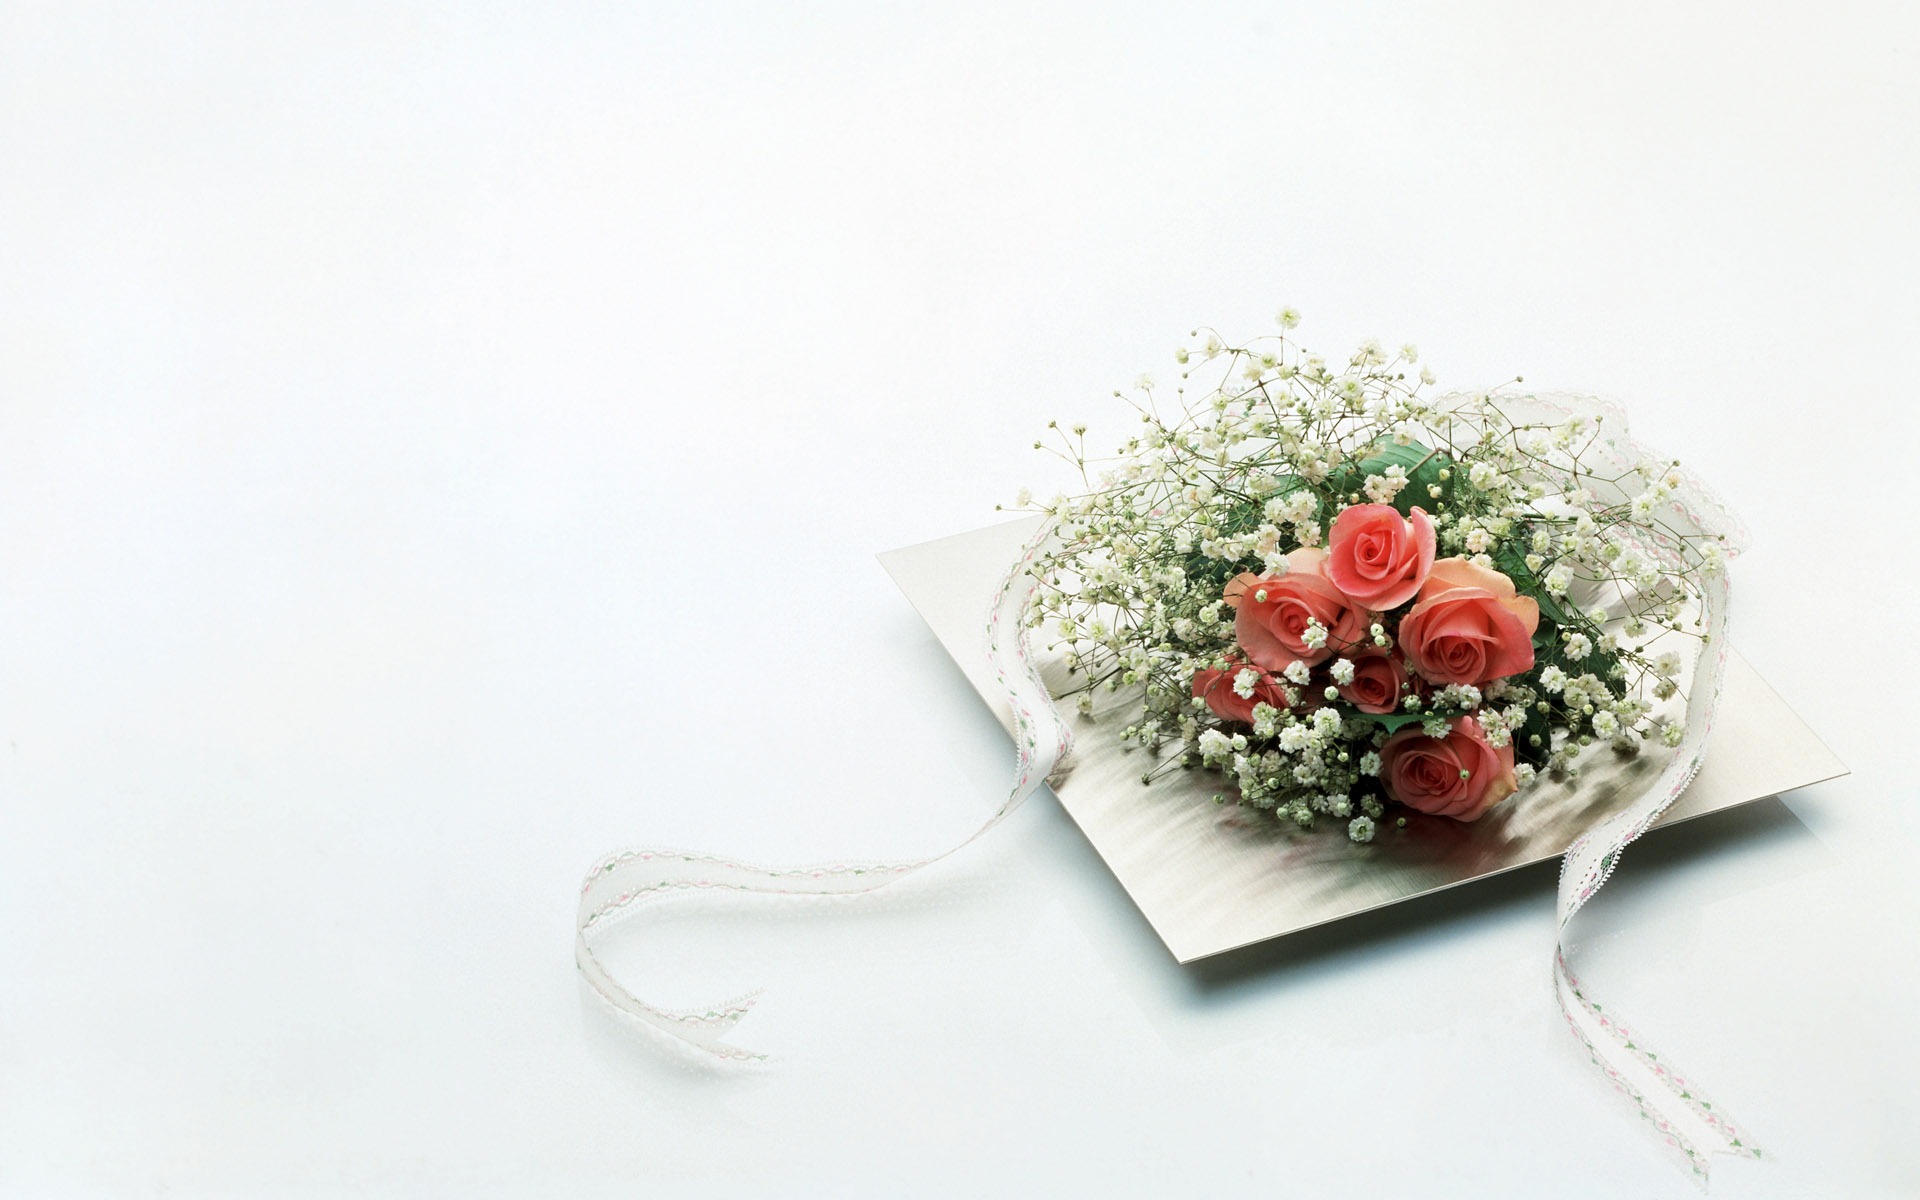 婚庆鲜花物品壁纸(二)3 - 1920x1200